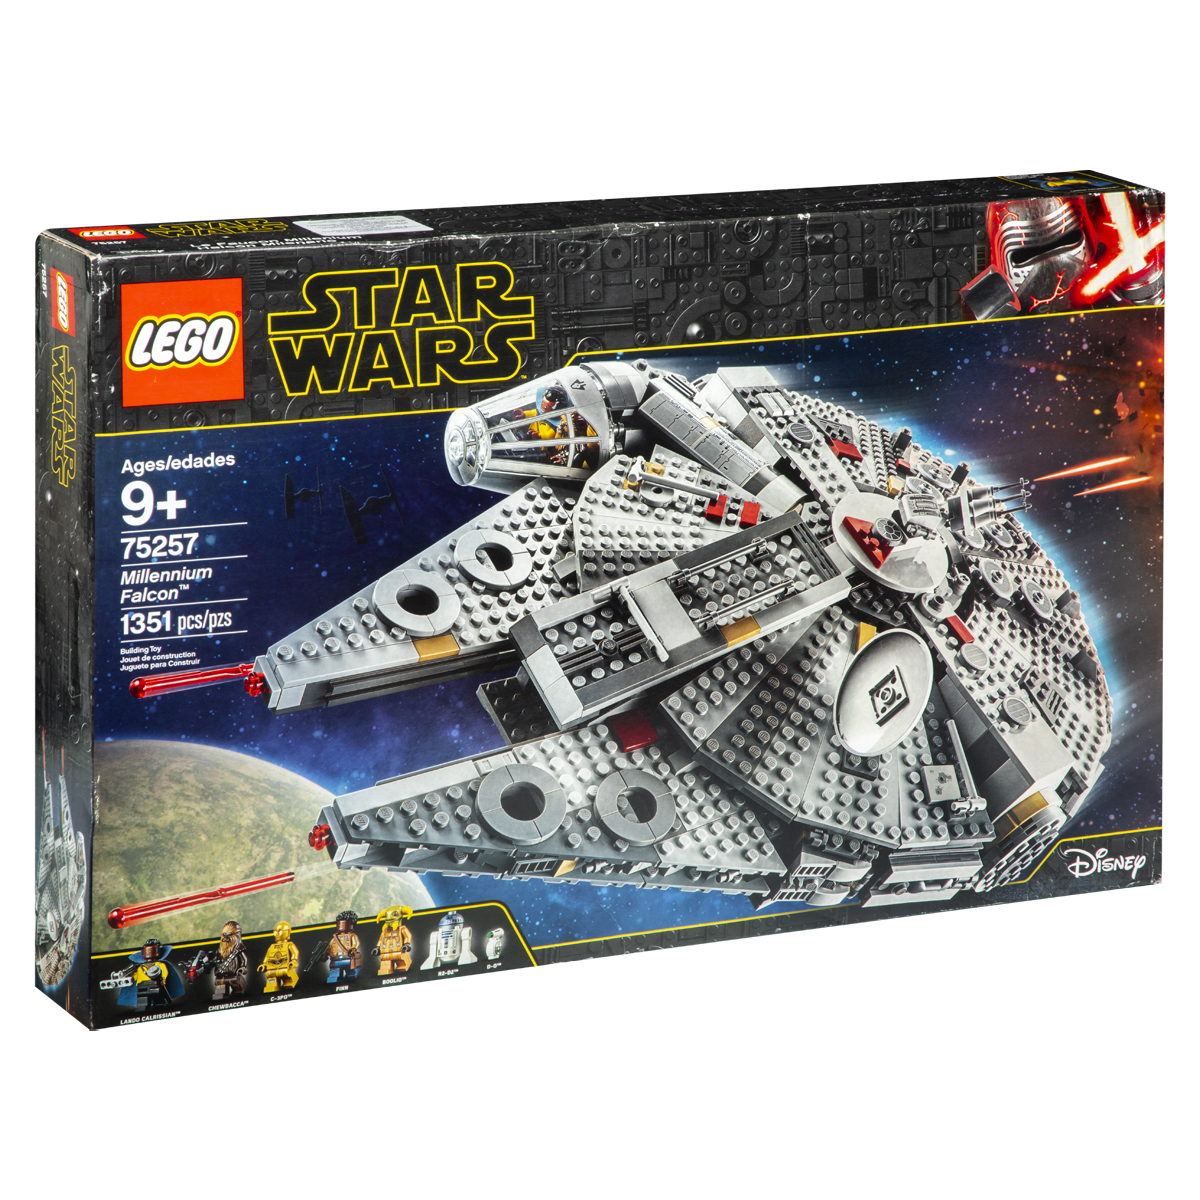 El Halcón Milenario de Star Wars salvó a Lego - El Cronista